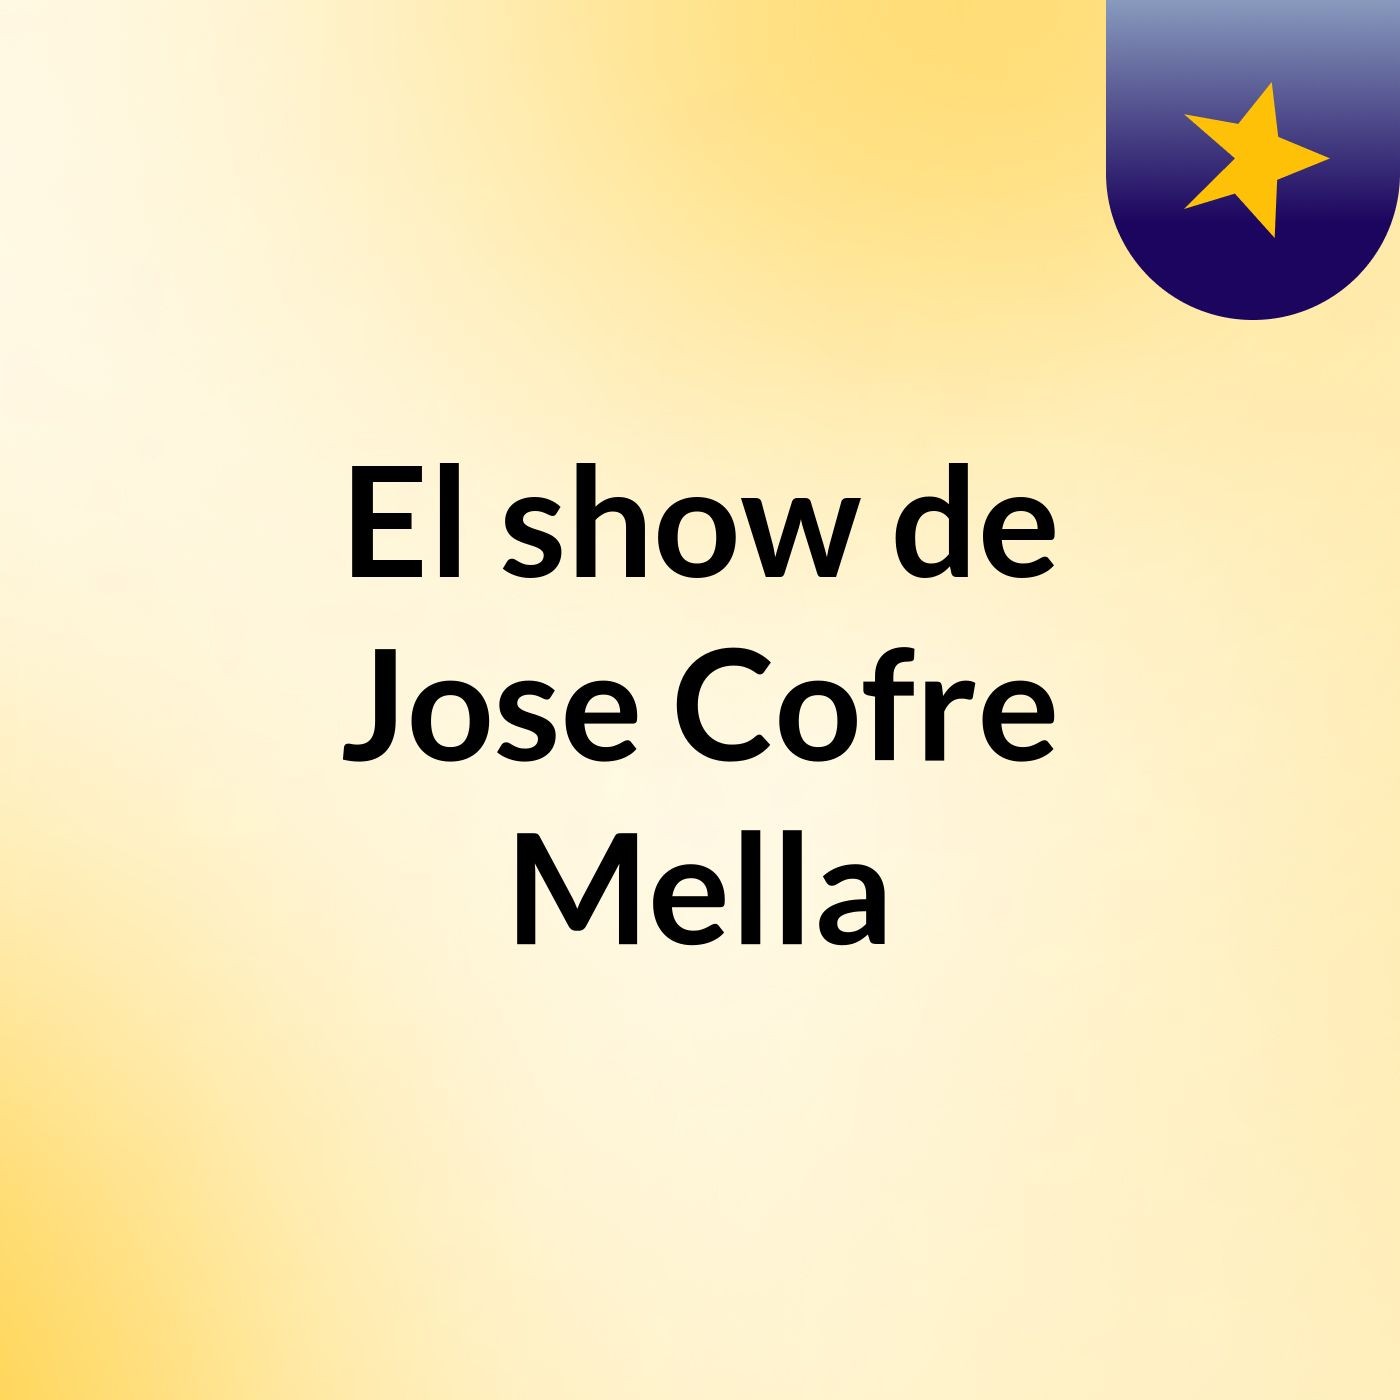 El show de Jose Cofre Mella